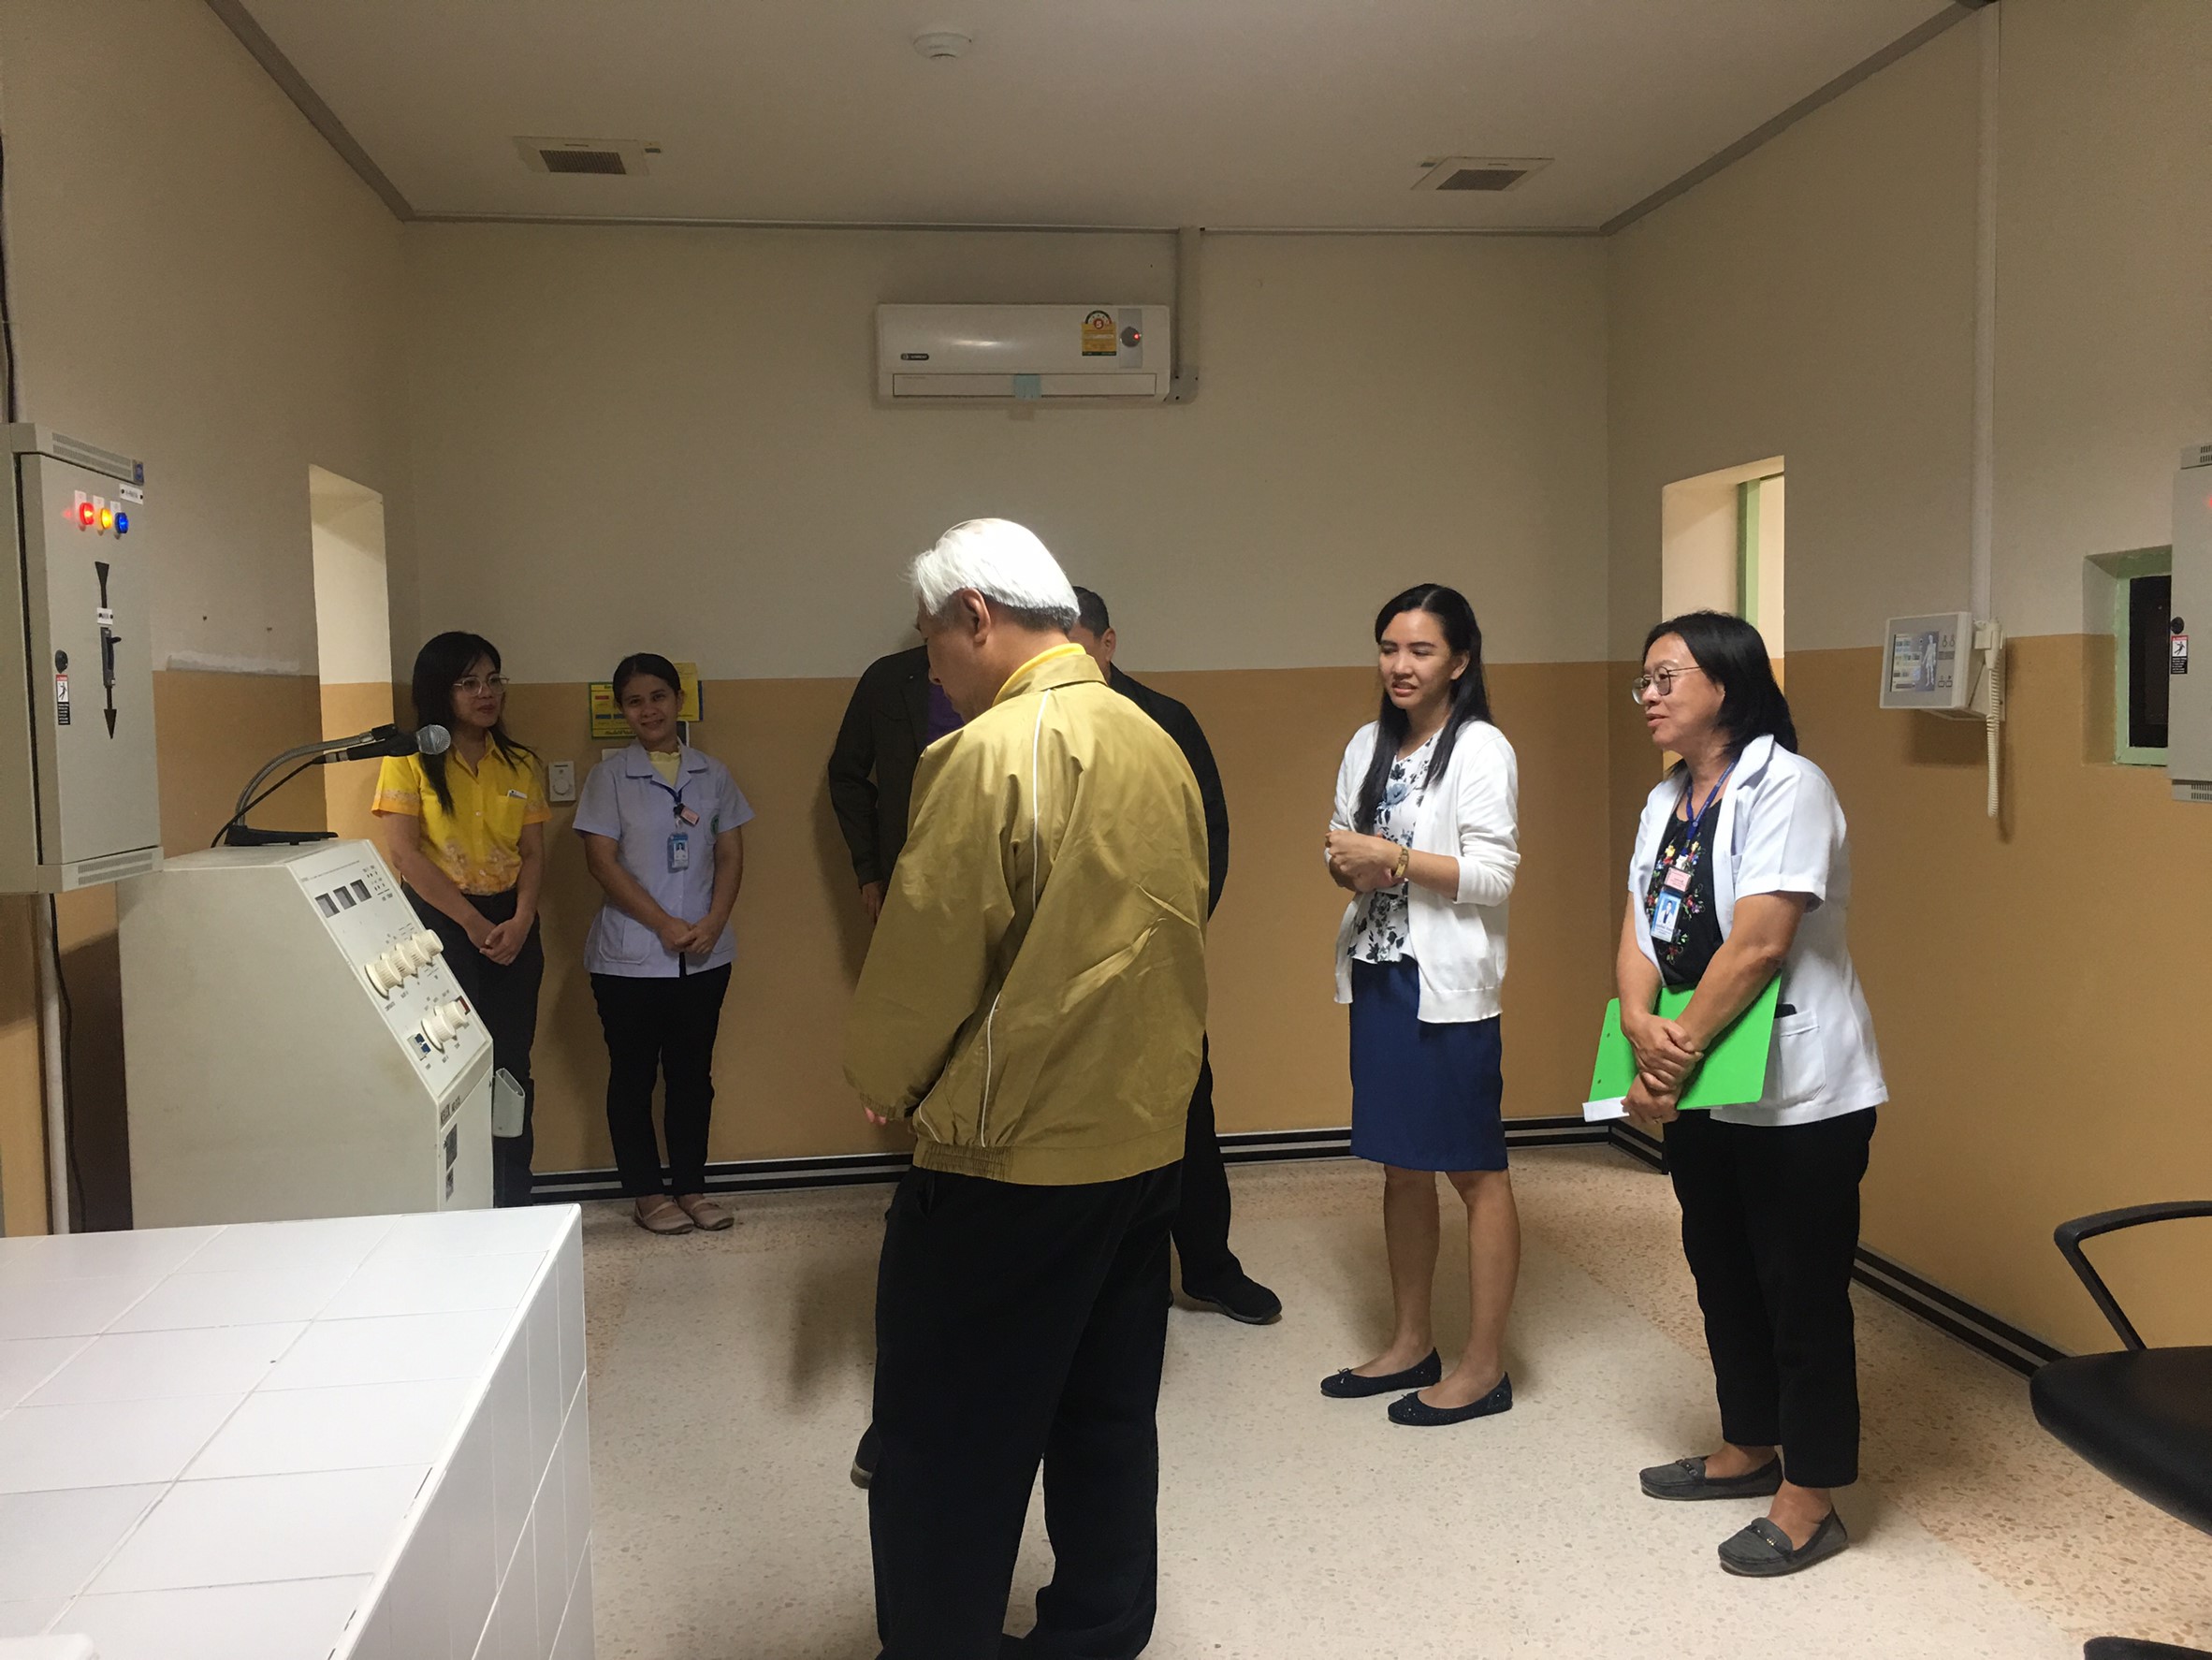 ประชุมวิชาการร่วมกับรังสีการแพทย์แห่งประเทศไทย ครั้งที่17 27-29 พ.ย. - พร้อมเข้าเยี่ยมและให้กำลังใจหน่วยงานรังสีวิทยาในพื้นที่จังหวัดอุบลราชธานีระหว่างวันที่ 25-26 พฤศจิกายน 2562 79